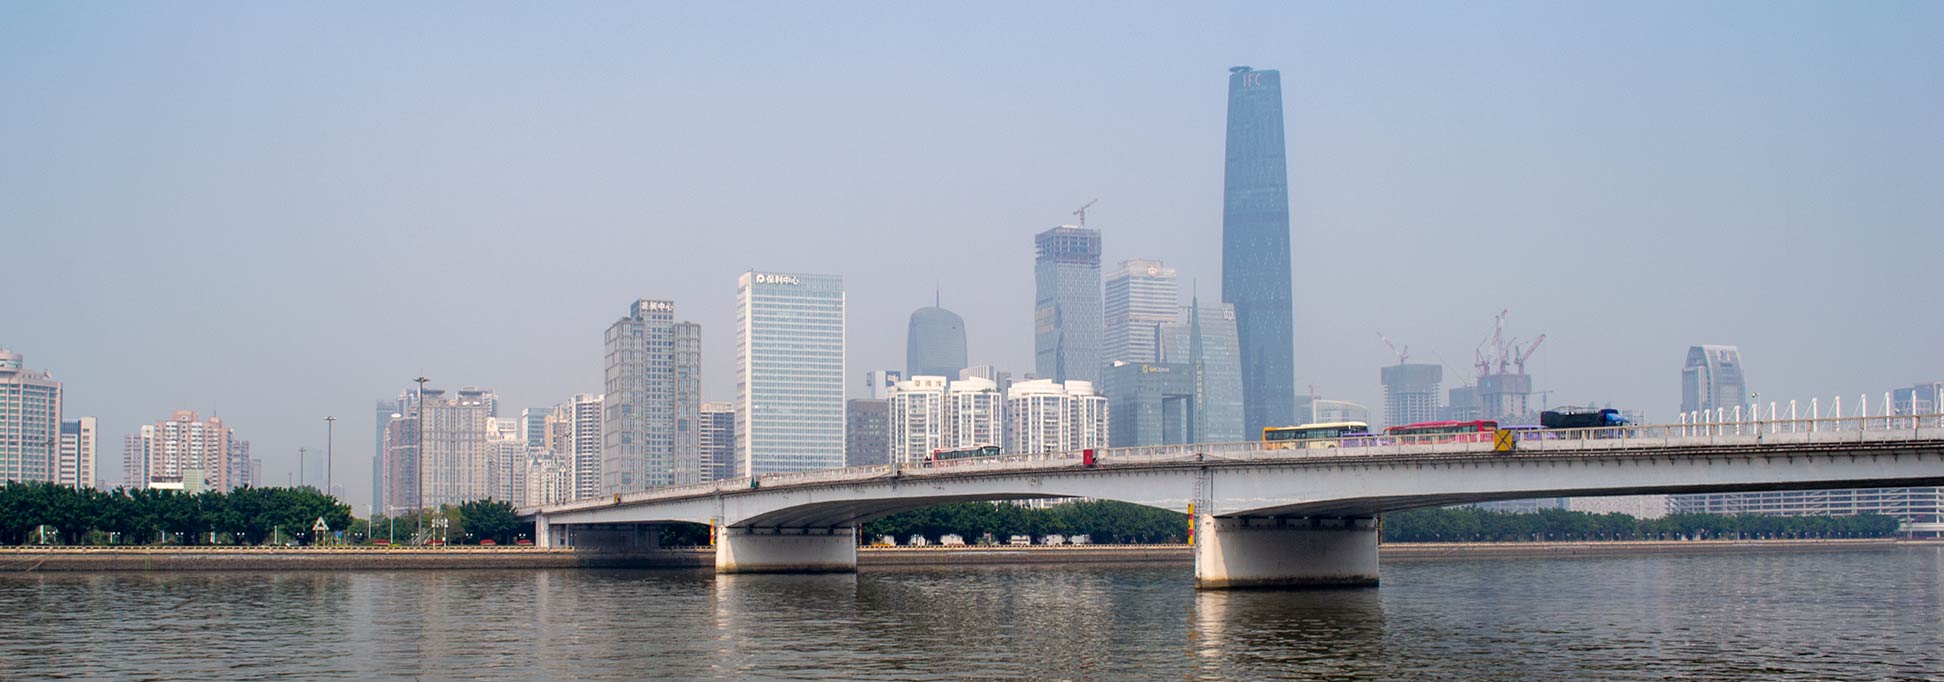 Guangzhou at Zhujiang River, China